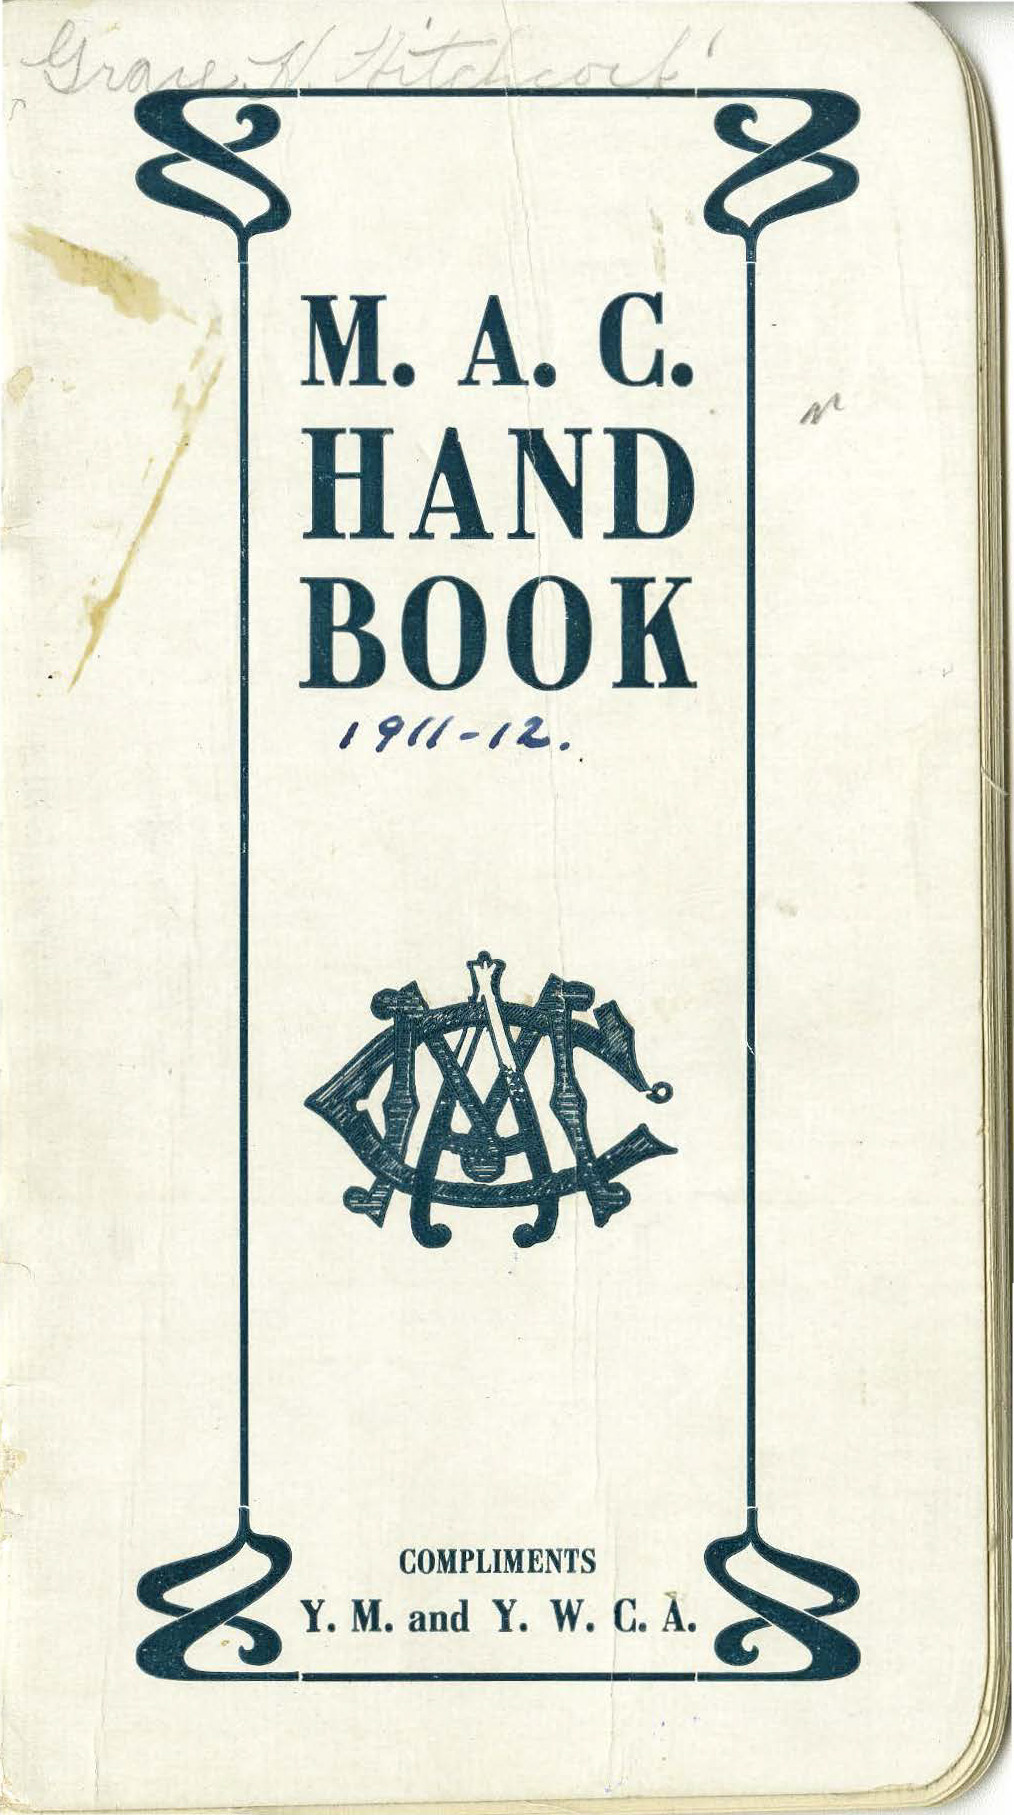 Student Handbook, 1911-1912